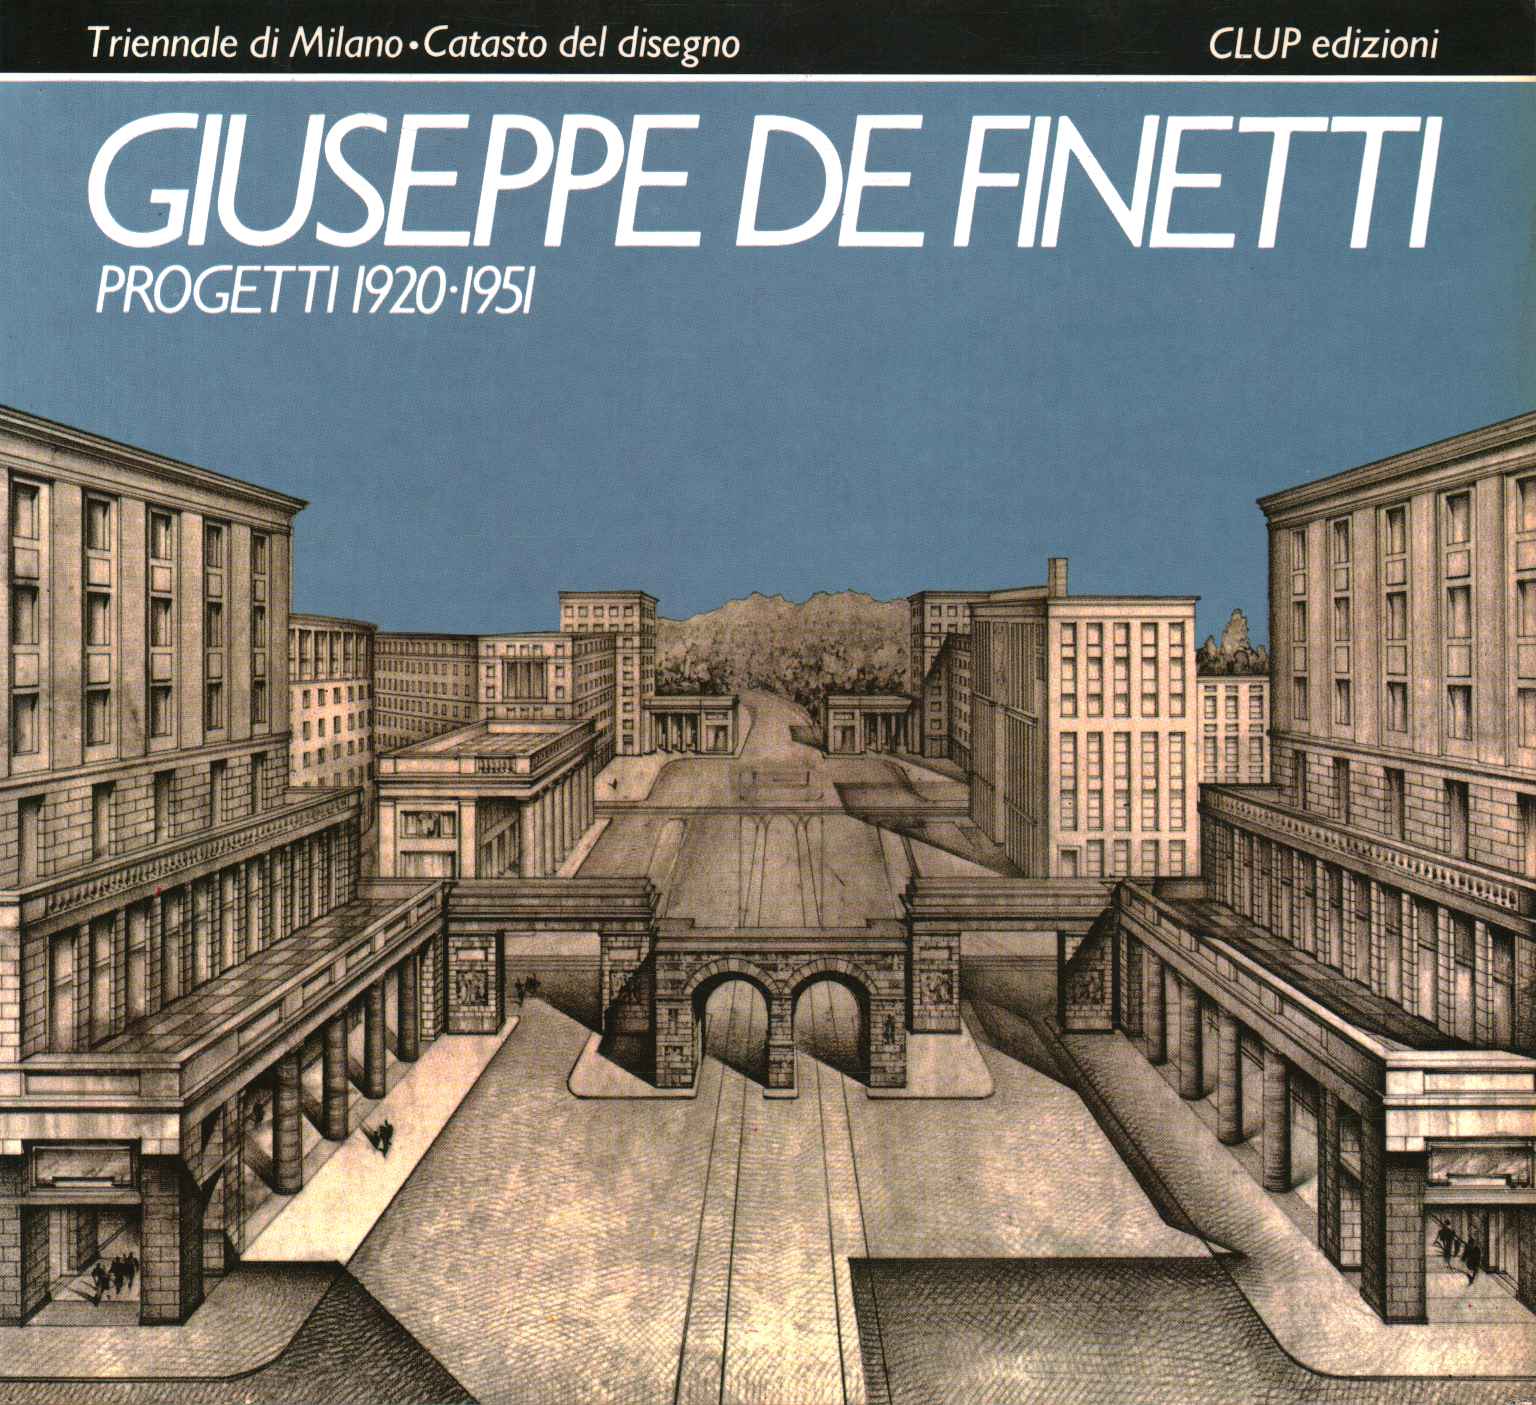 Giuseppe De Finetti. Projets 1920-1951